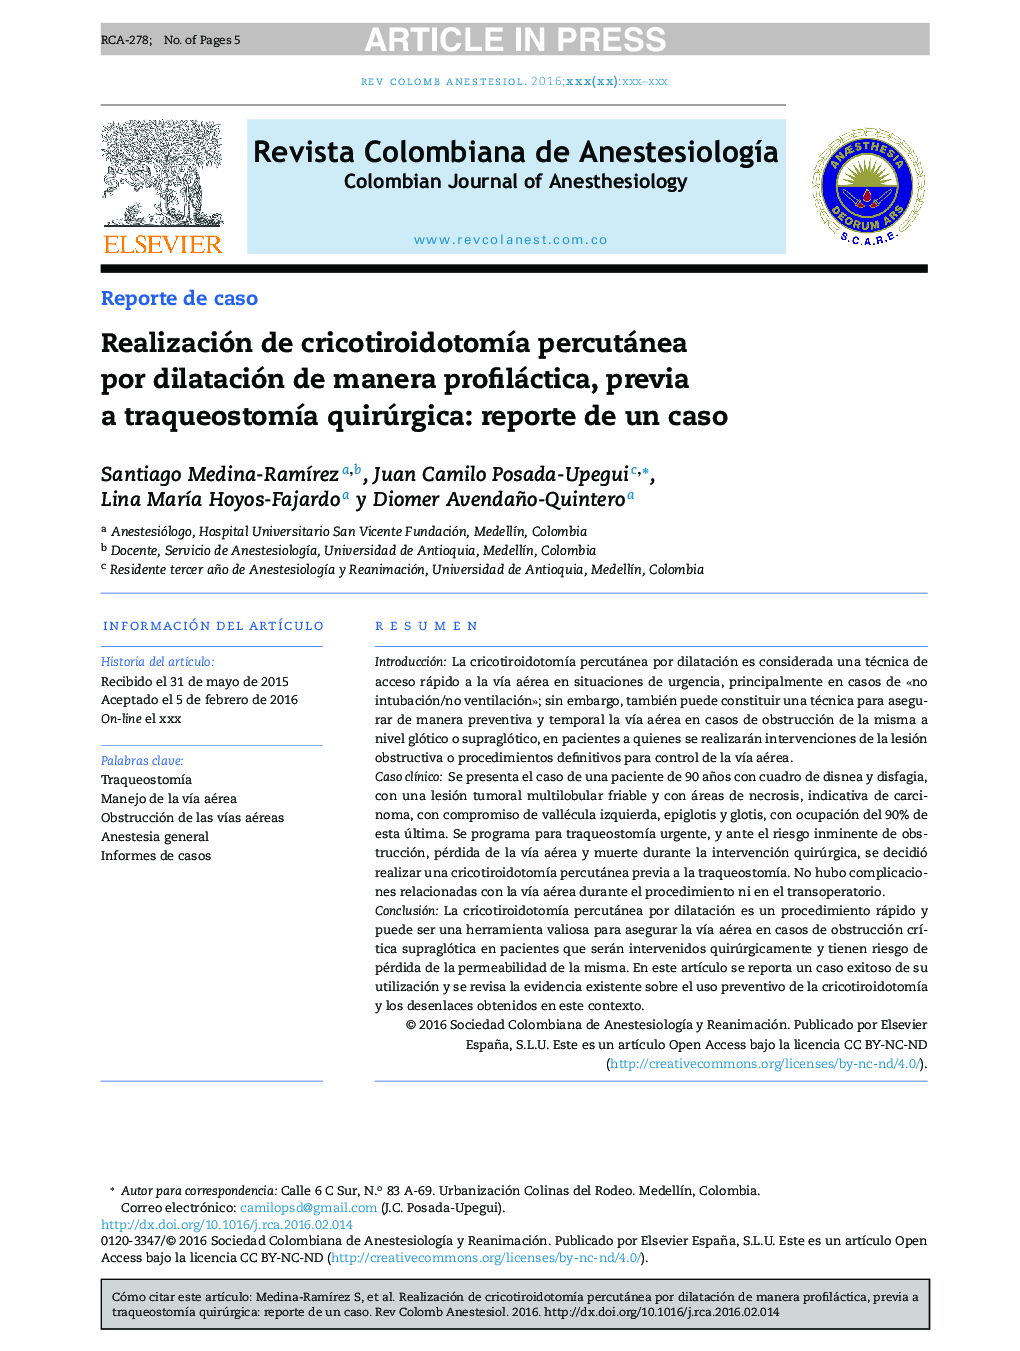 Realización de cricotiroidotomÃ­a percutánea por dilatación de manera profiláctica, previa a traqueostomÃ­a quirúrgica: reporte de un caso